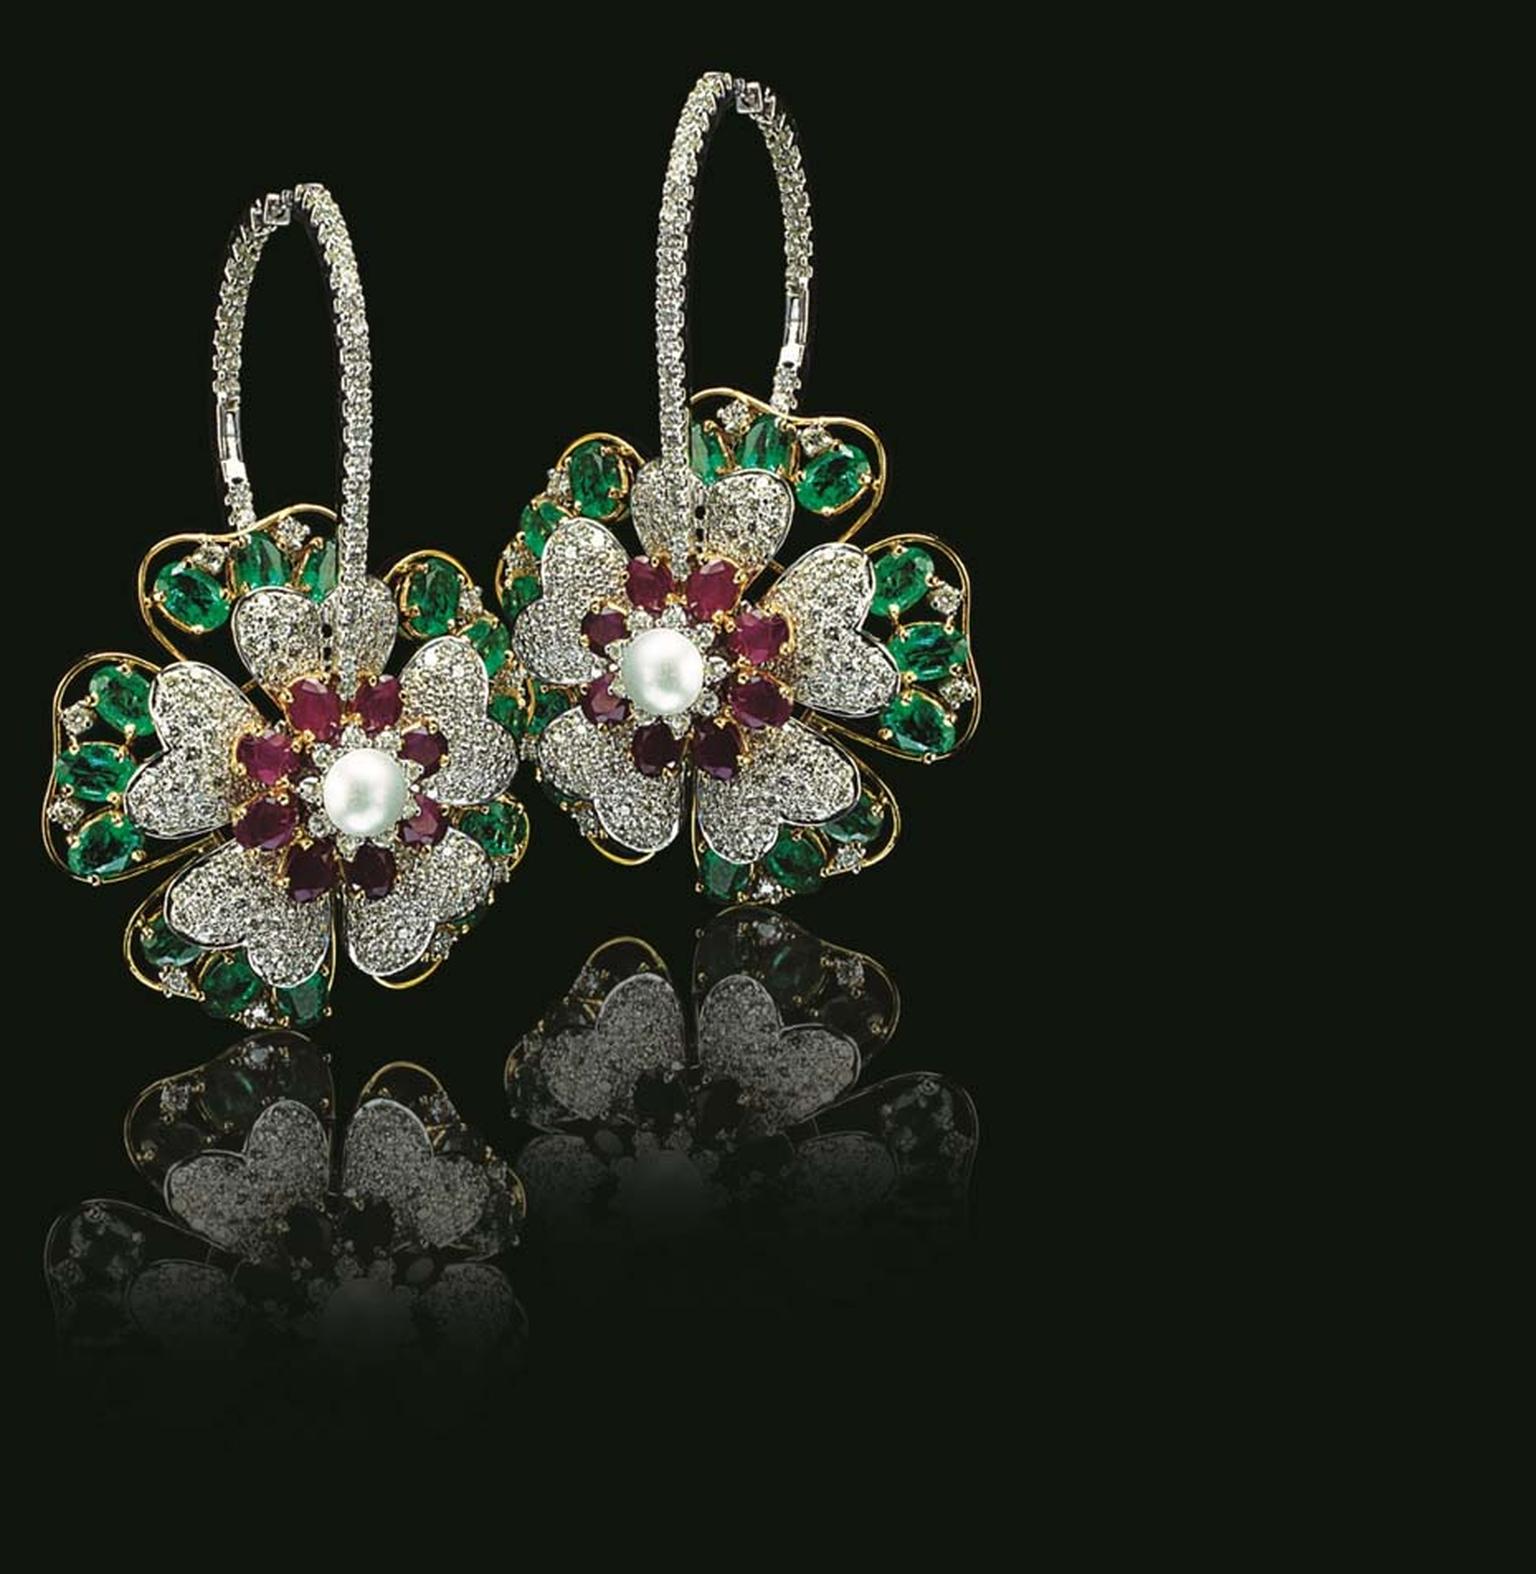 Varuna D Jani Floral hoop earrings featuring diamonds, rubies and emeralds